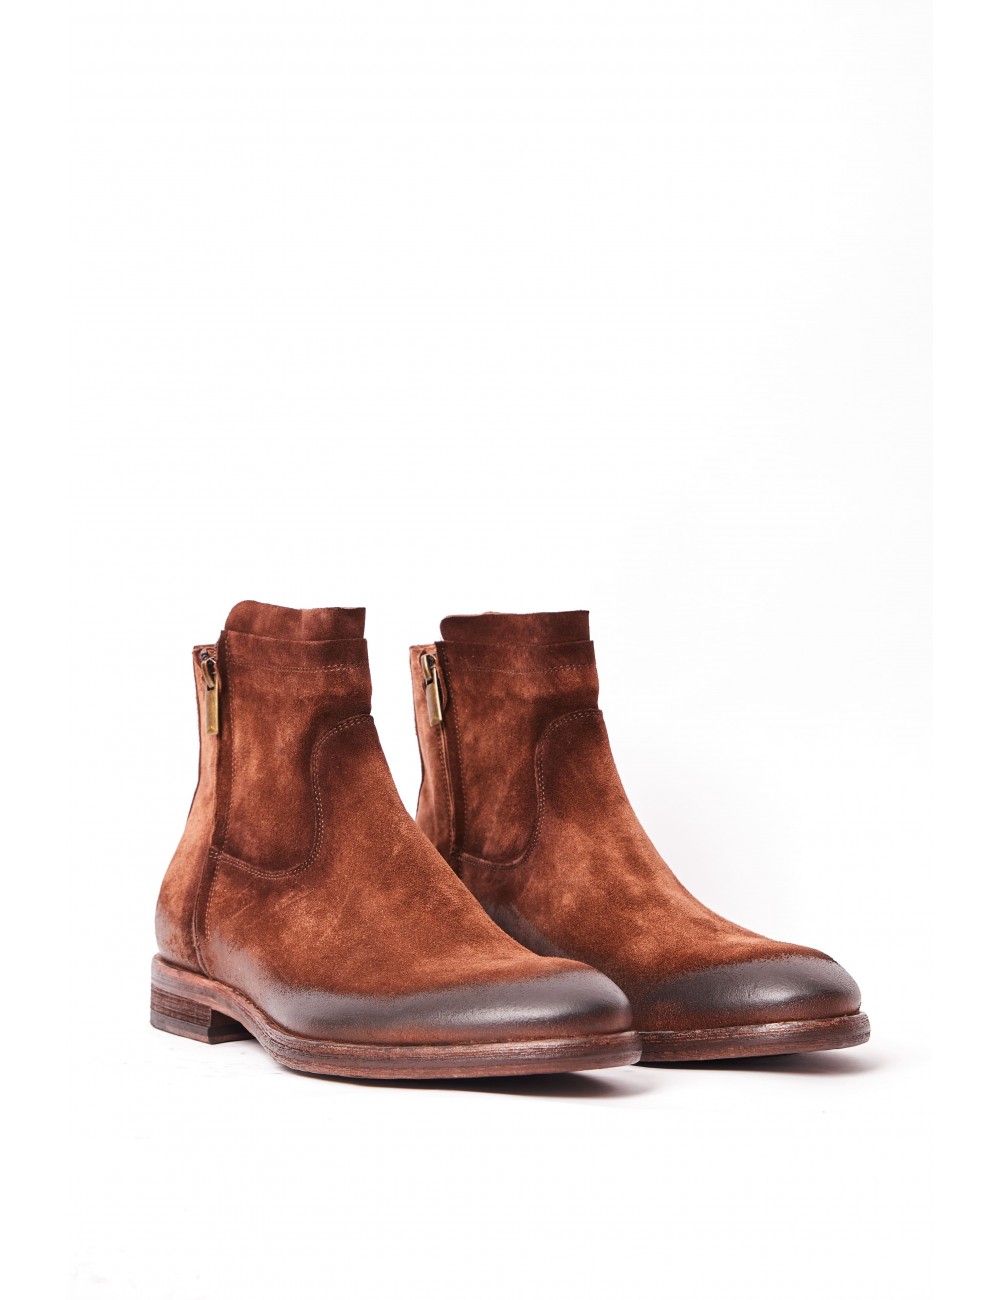 Men's boot in brown suede...